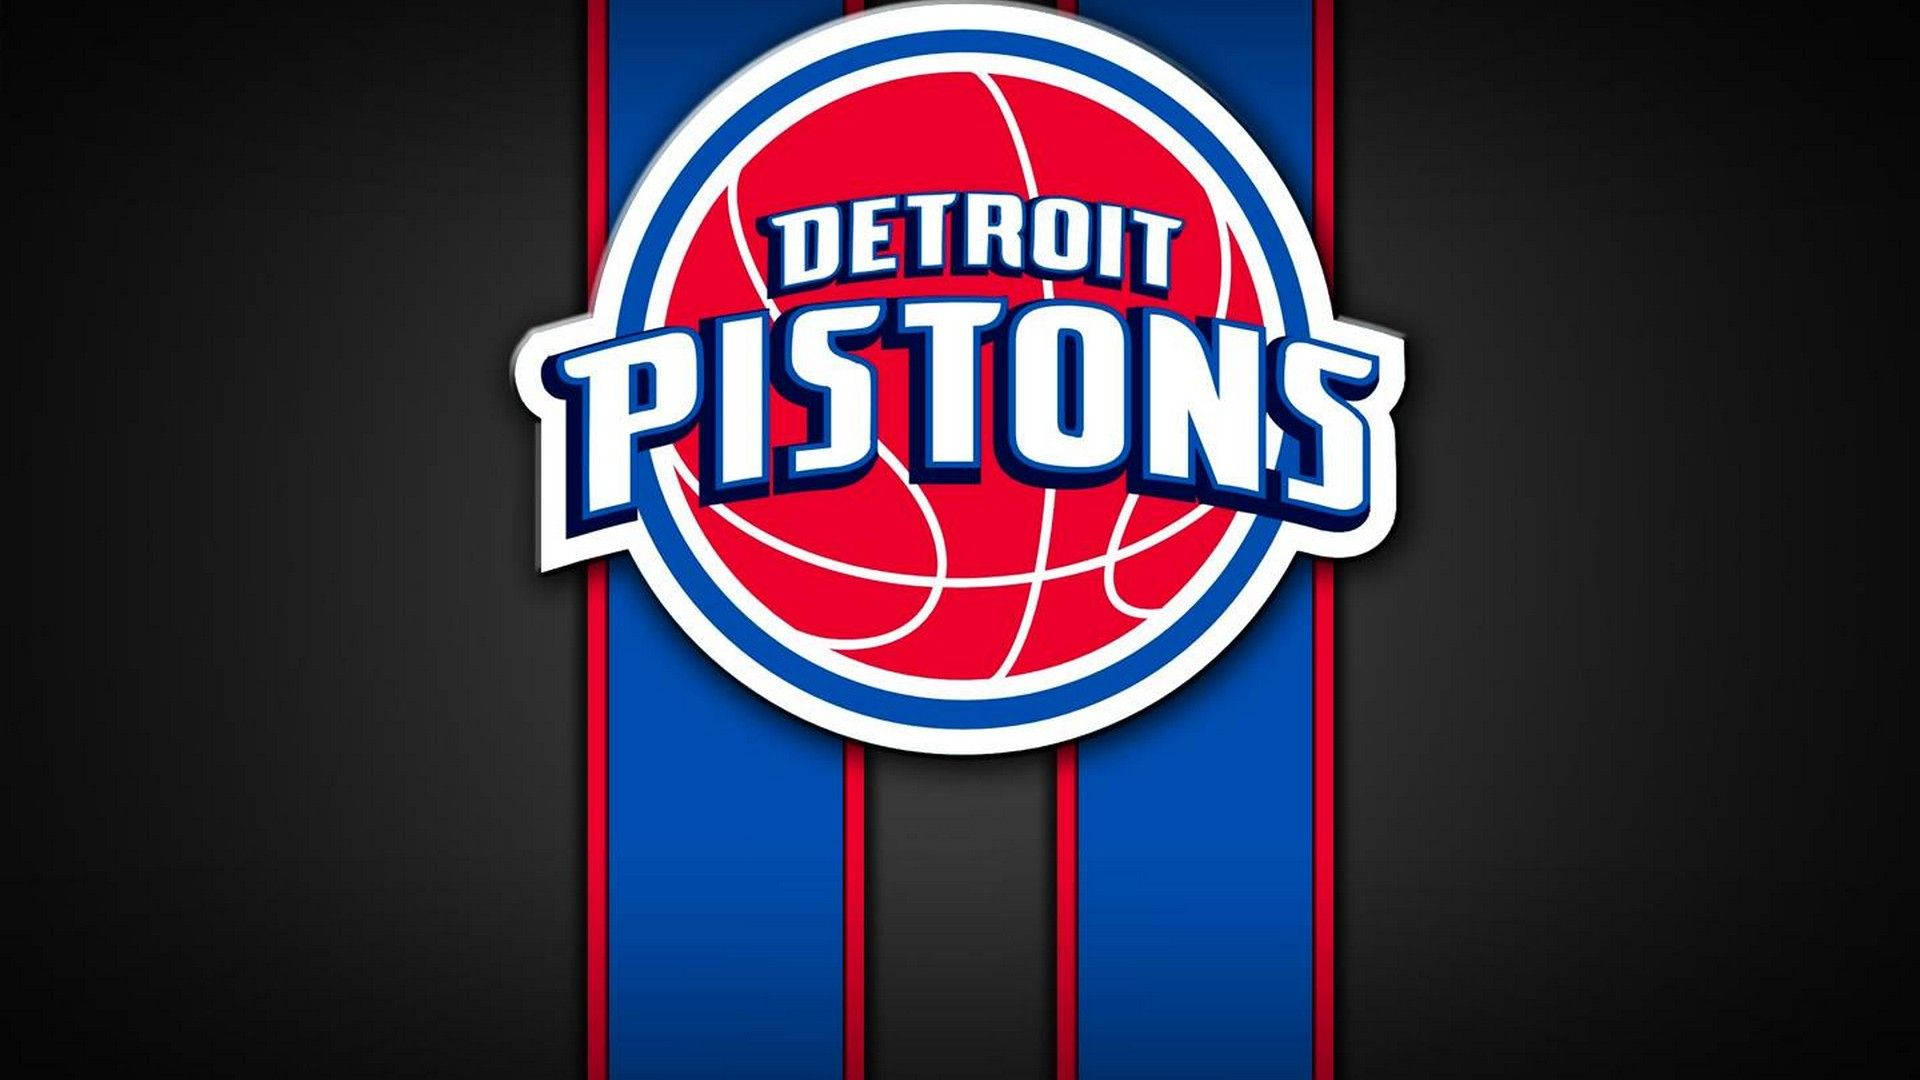 Detroit Pistons Team Logo Background